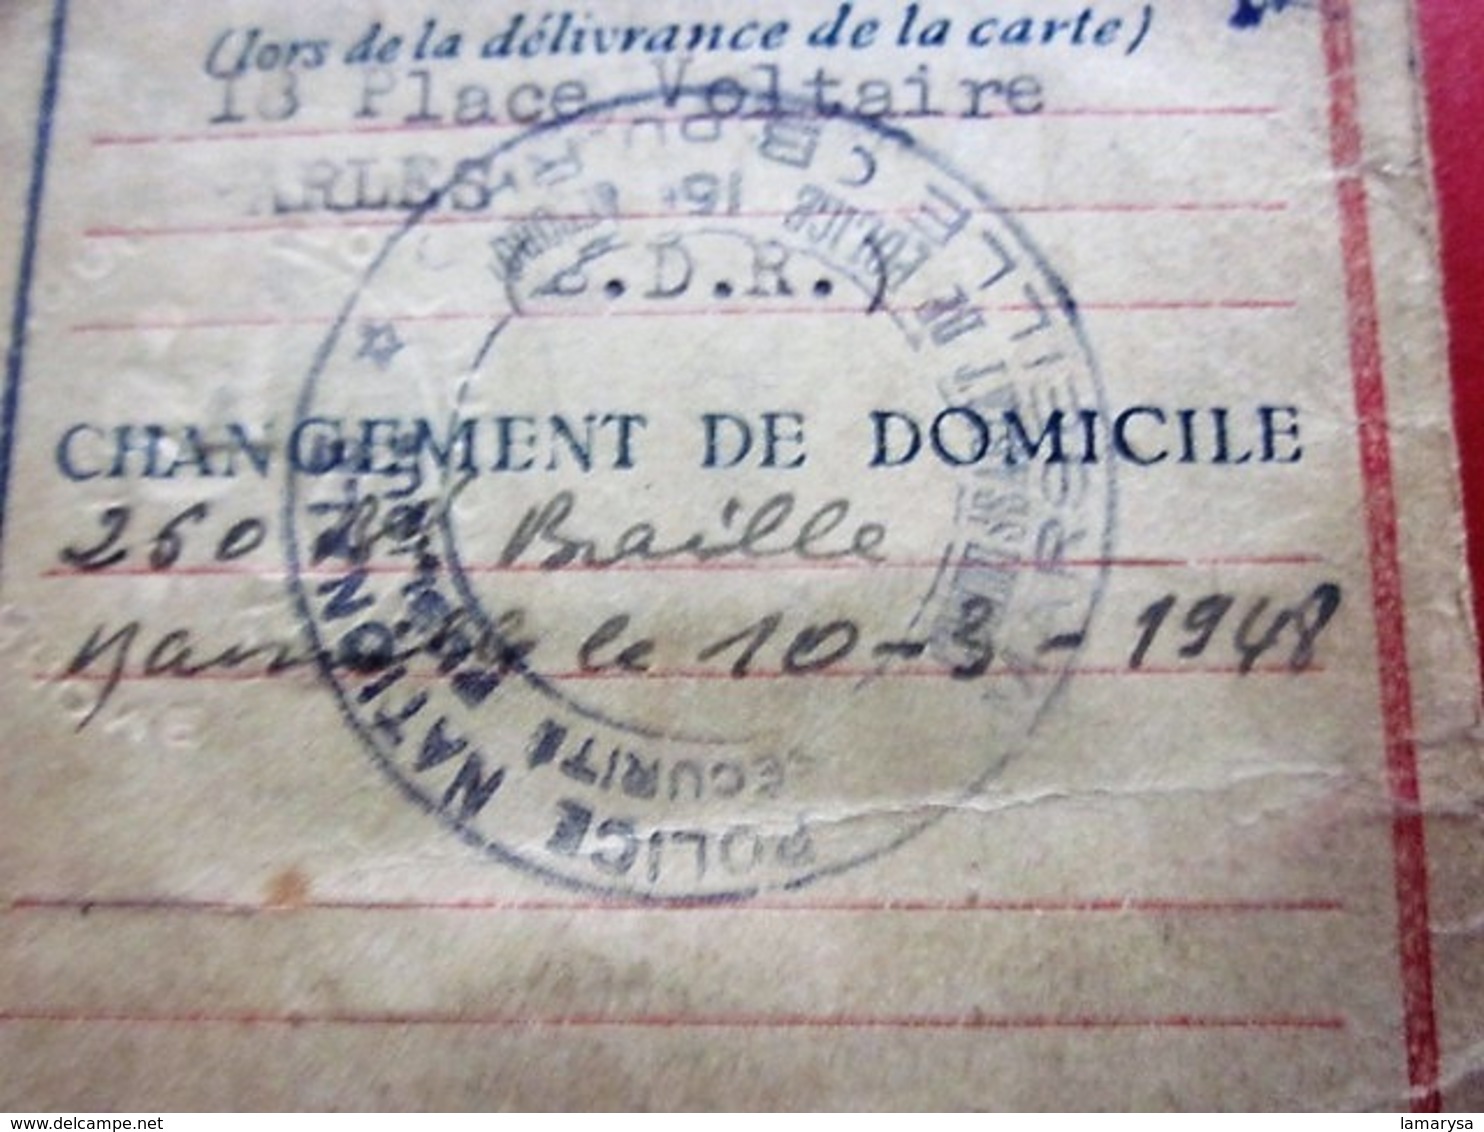 1944 WW2- CARTE IDENTITÉ DE FRANÇAIS SOUS RÉGIME De VICHY PÉTAIN ÉTAT FRANÇAIS Délivrée Arles(rayé Barre Noire)☛(Périmé) - Historische Documenten